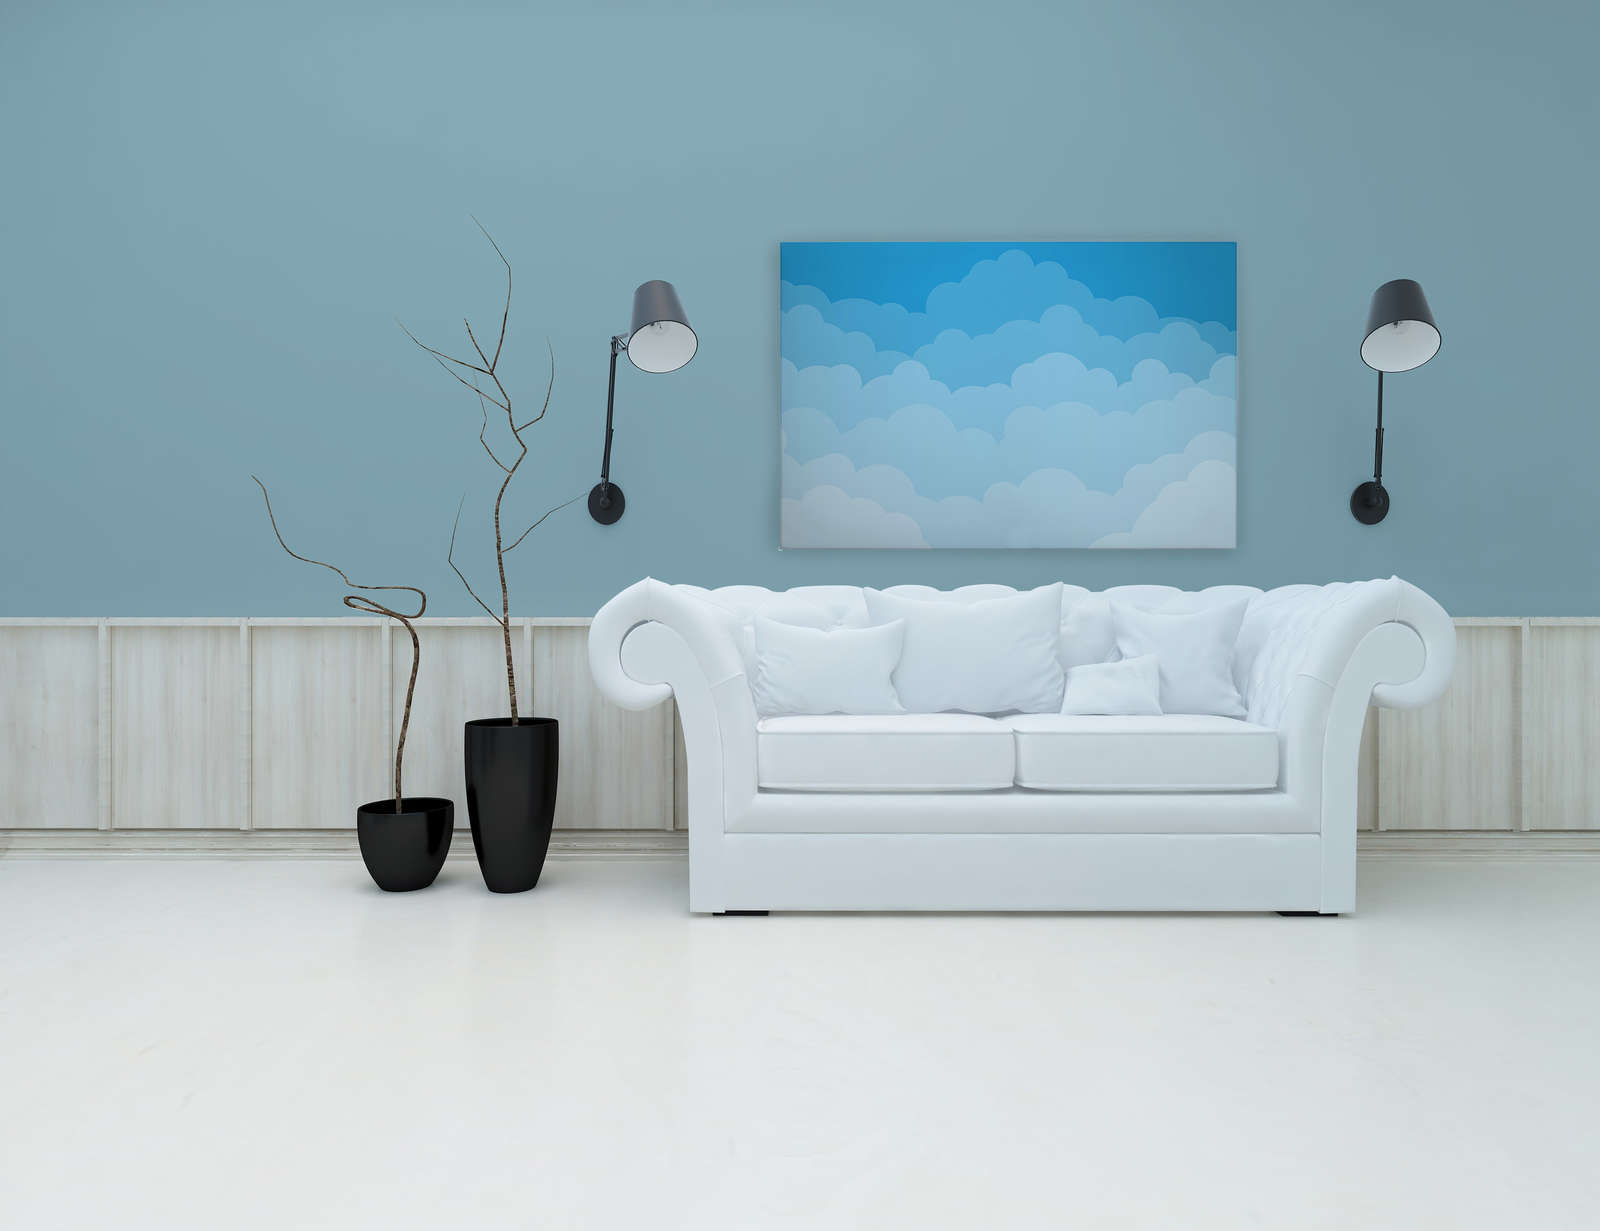             Toile Ciel avec nuages style bande dessinée - 120 cm x 80 cm
        